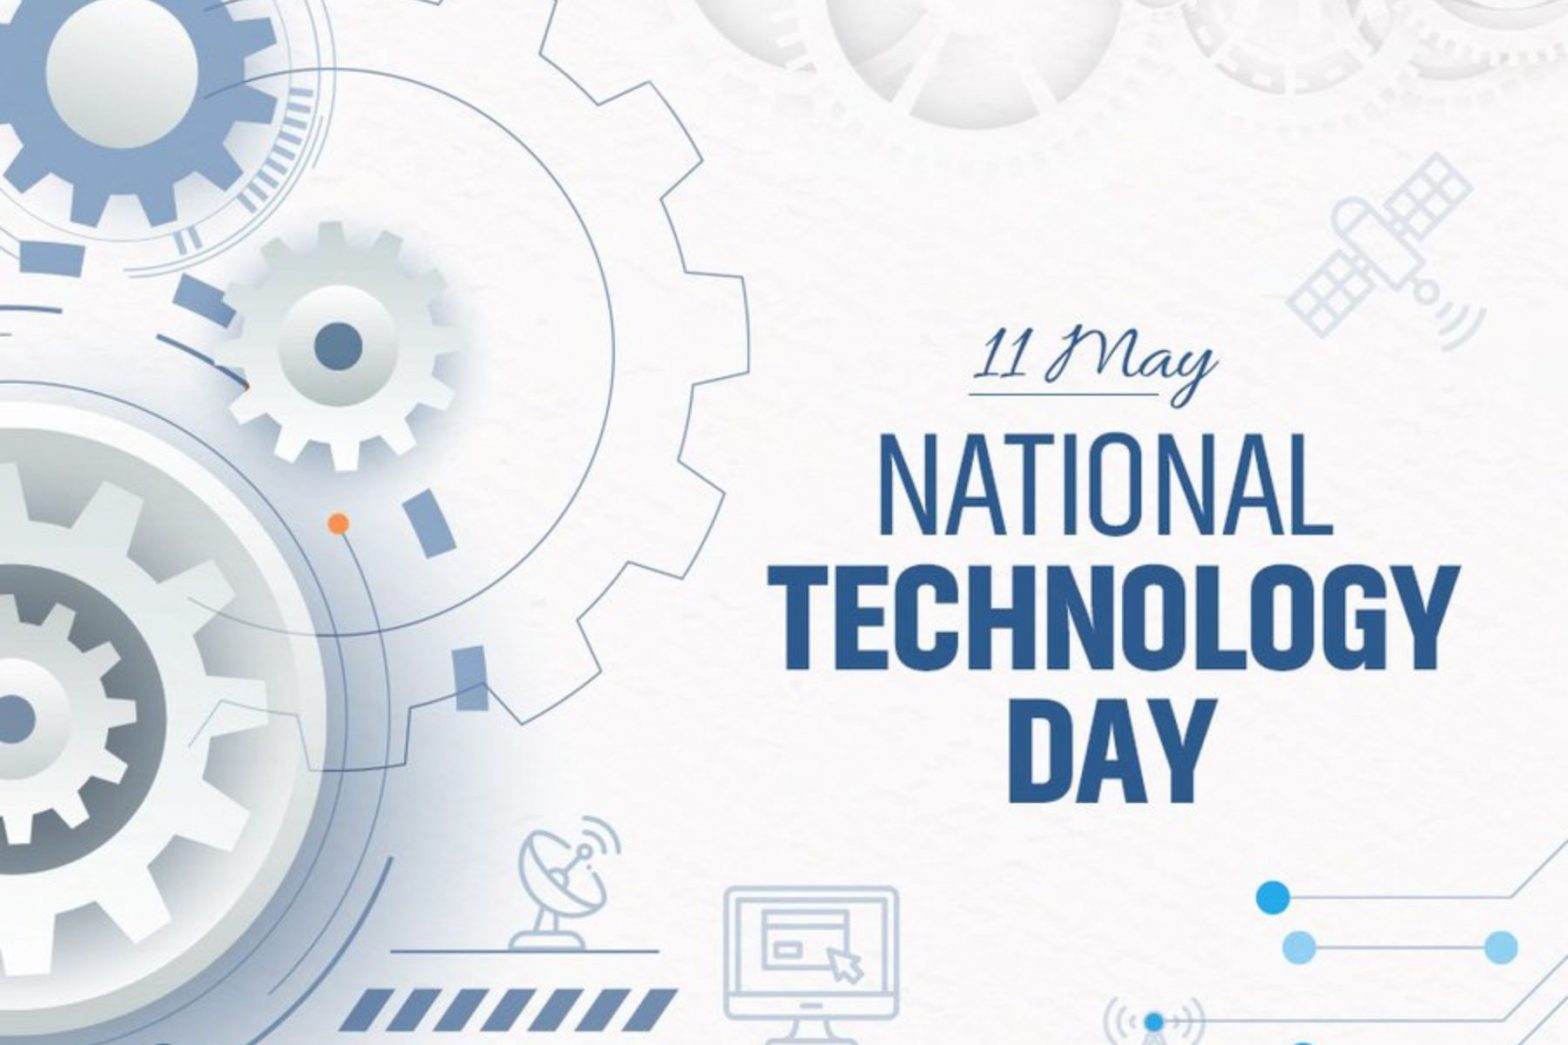 National Technology Day Quotes in Hindi: नेशनल टेक्नोलॉजी डे पर इन कोट्स के जरिए दें शुभकामनाएं